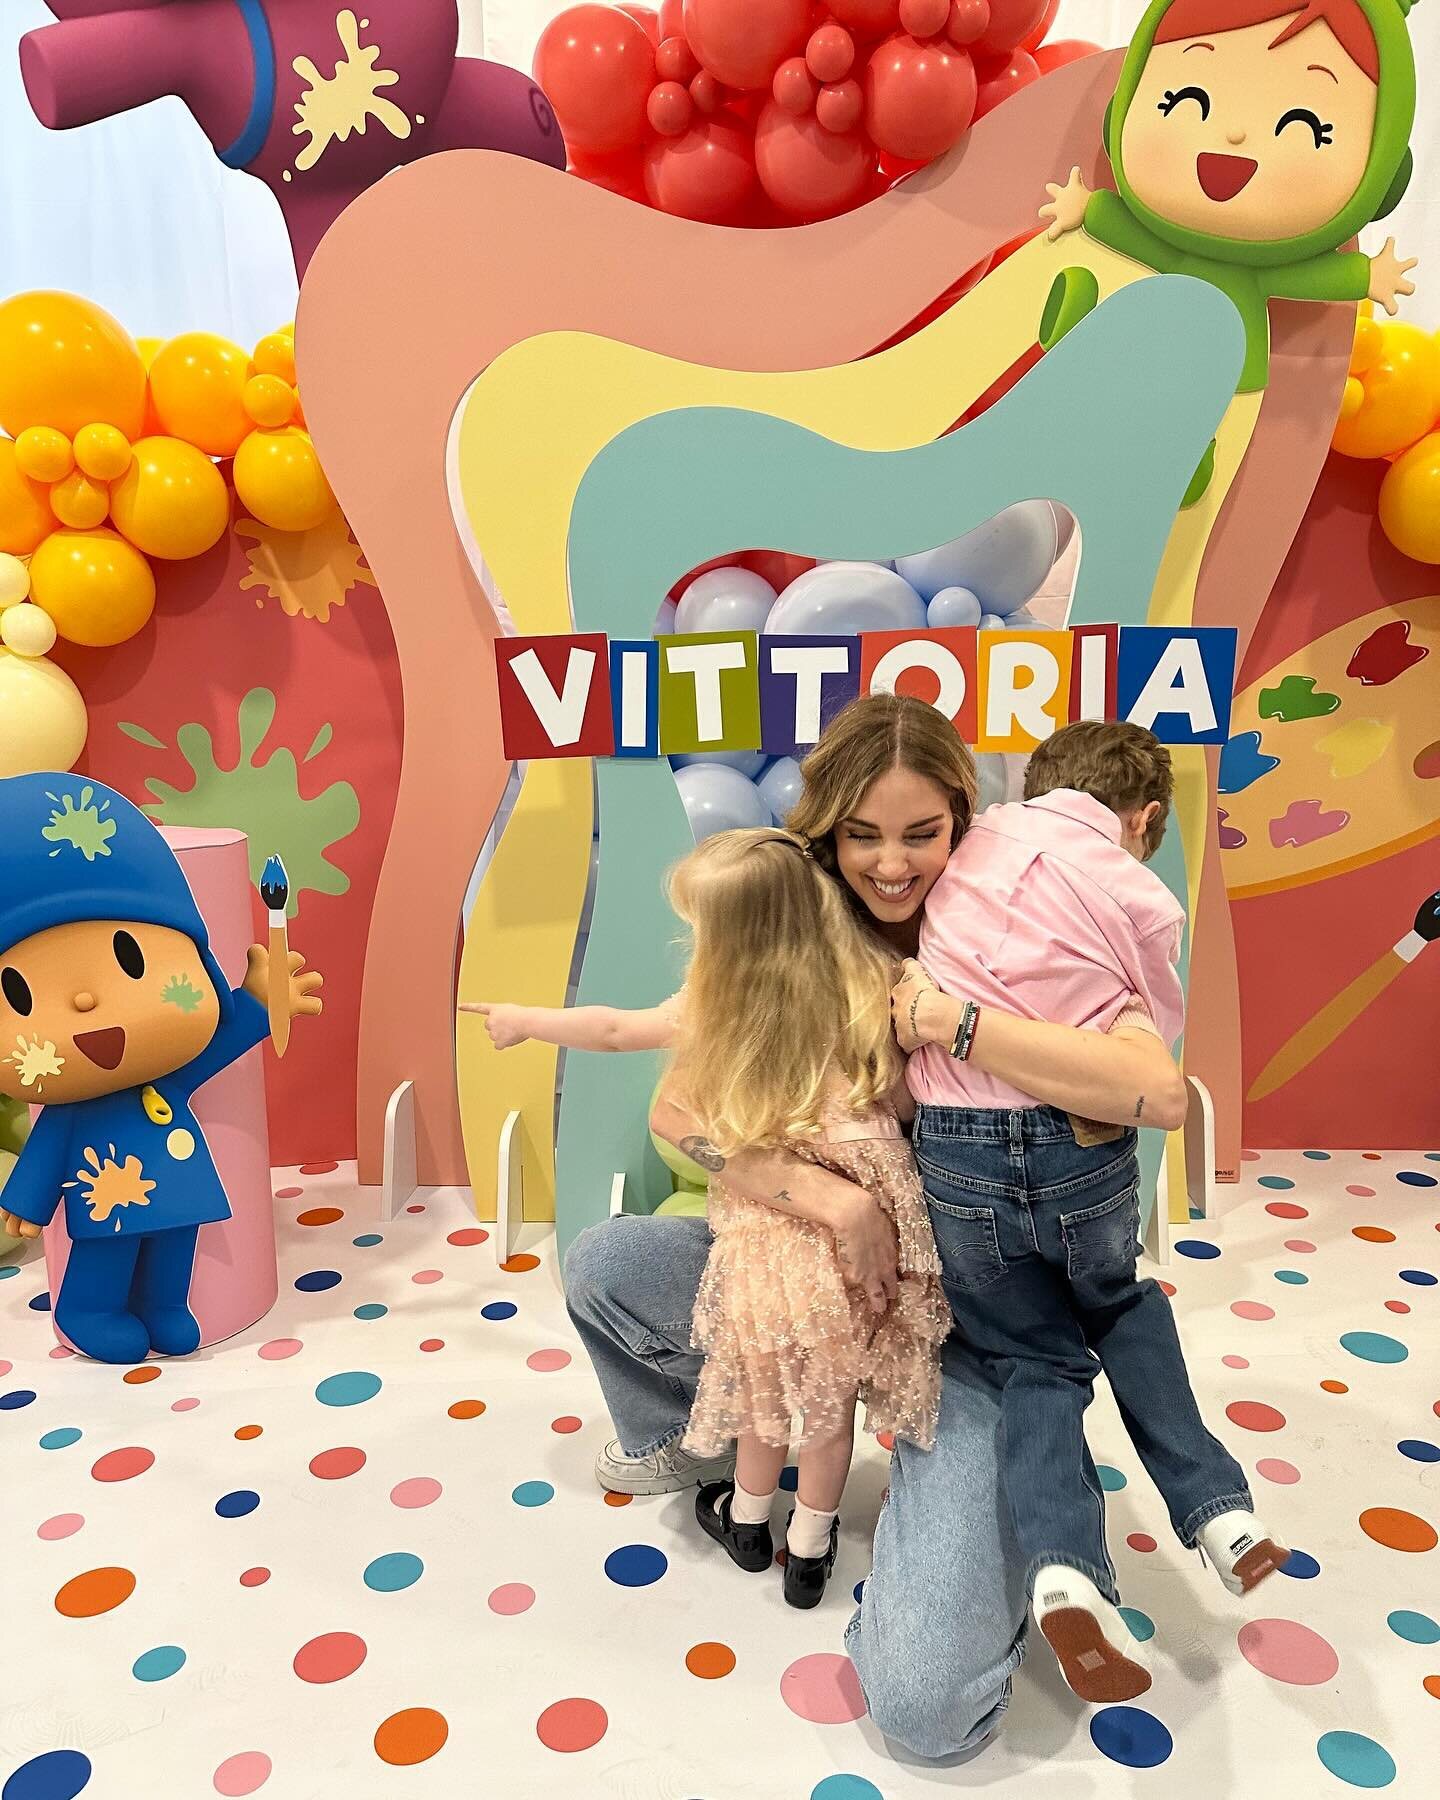 Chiara Ferragni con sus hijos en el cumpleaños de Vittoria | Foto: Instagram